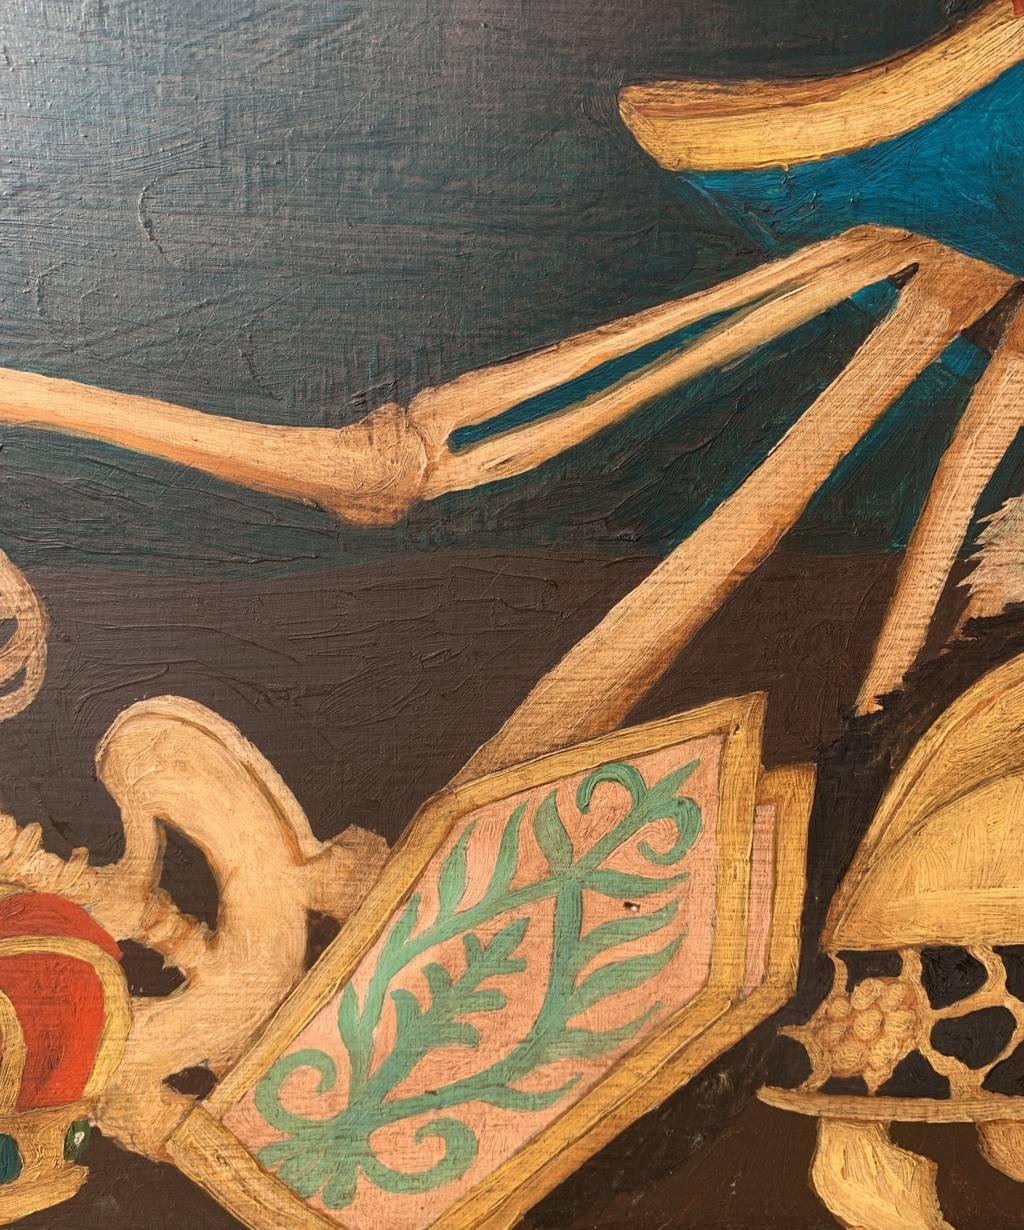 Peintre italien (XIXe siècle) - Memento Mori.

43 x 67 cm sans cadre, 48,5 x 72,5 cm avec cadre.

Peinture à l'huile ancienne sur bois, dans un cadre en bois.

État des lieux : Toile originale. Bon état de conservation de la surface picturale, il y